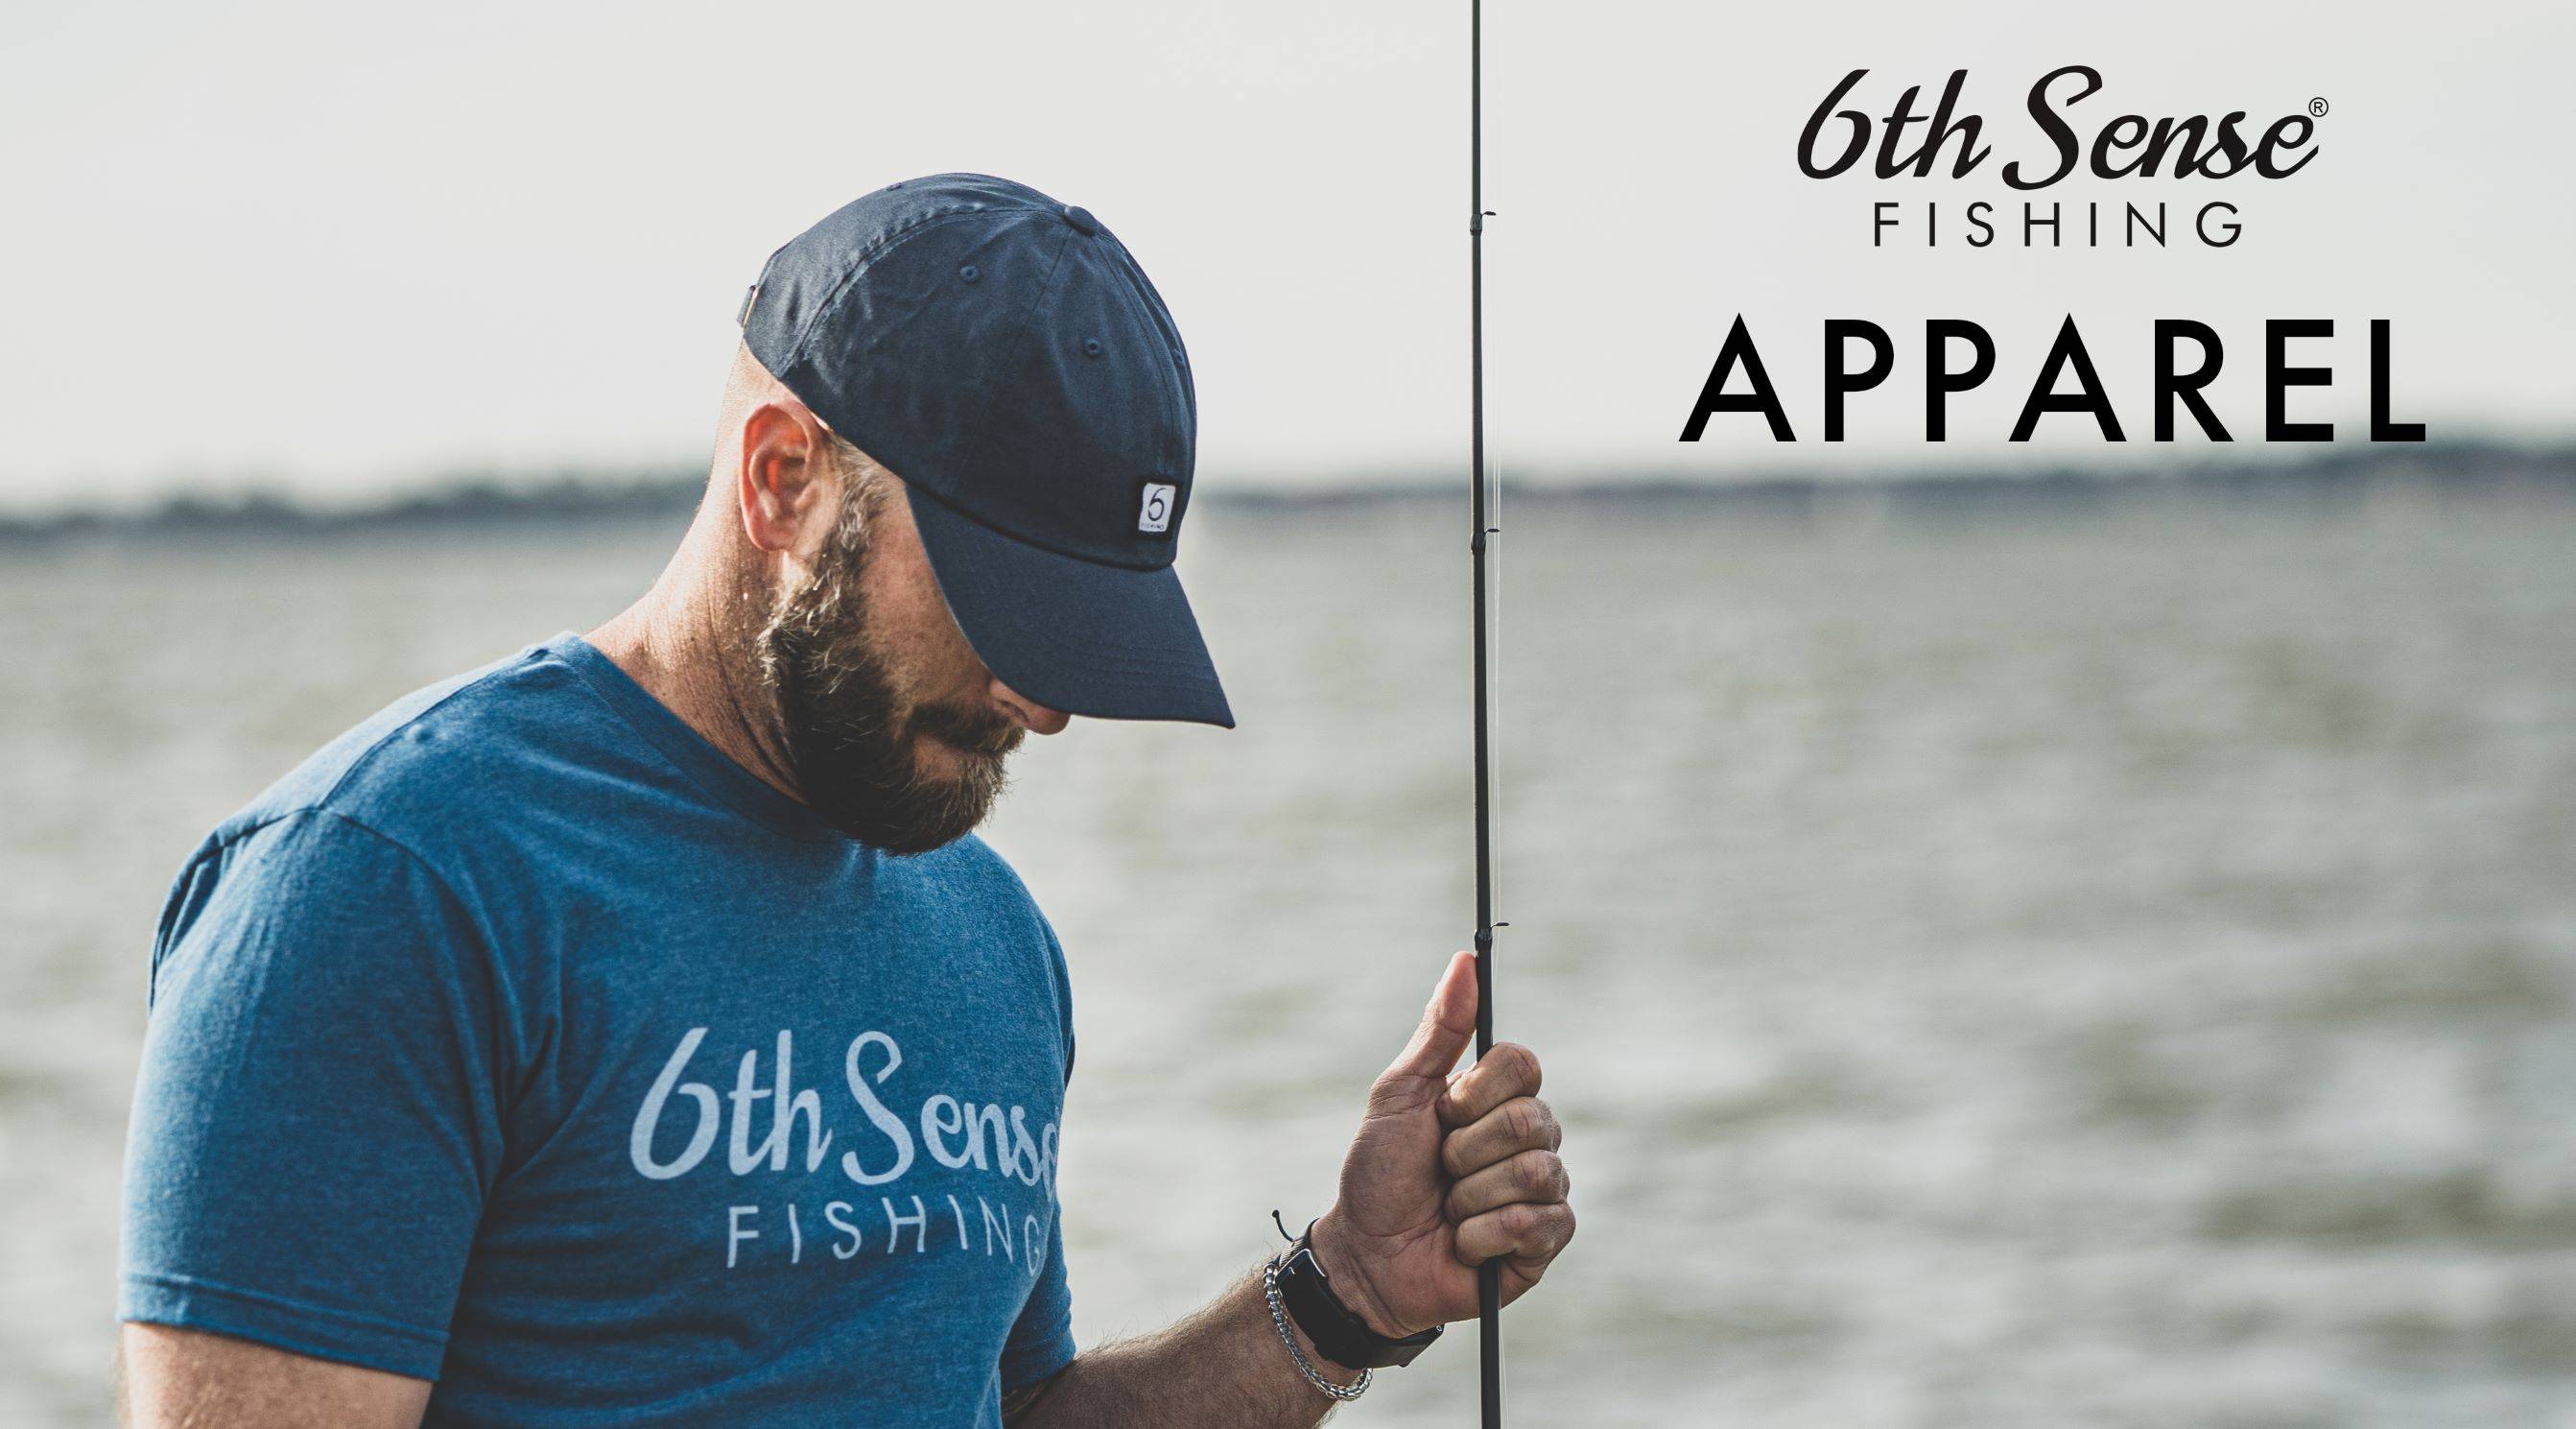 Apparel – 6th Sense Fishing